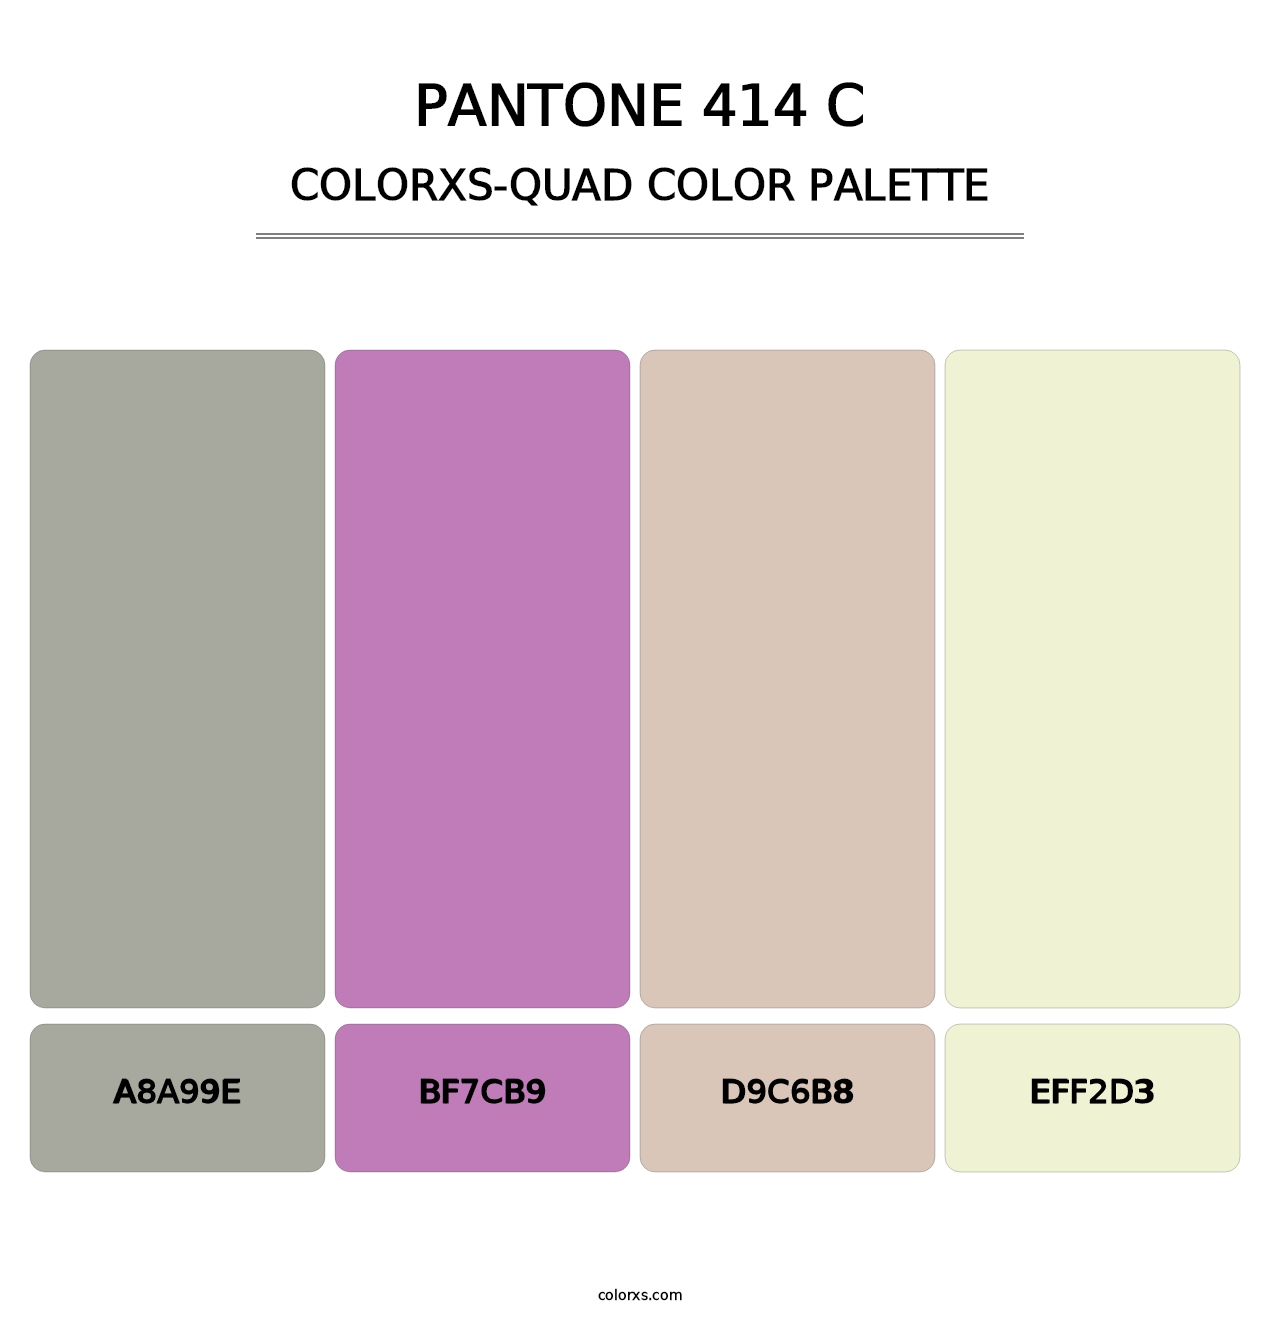 PANTONE 414 C - Colorxs Quad Palette